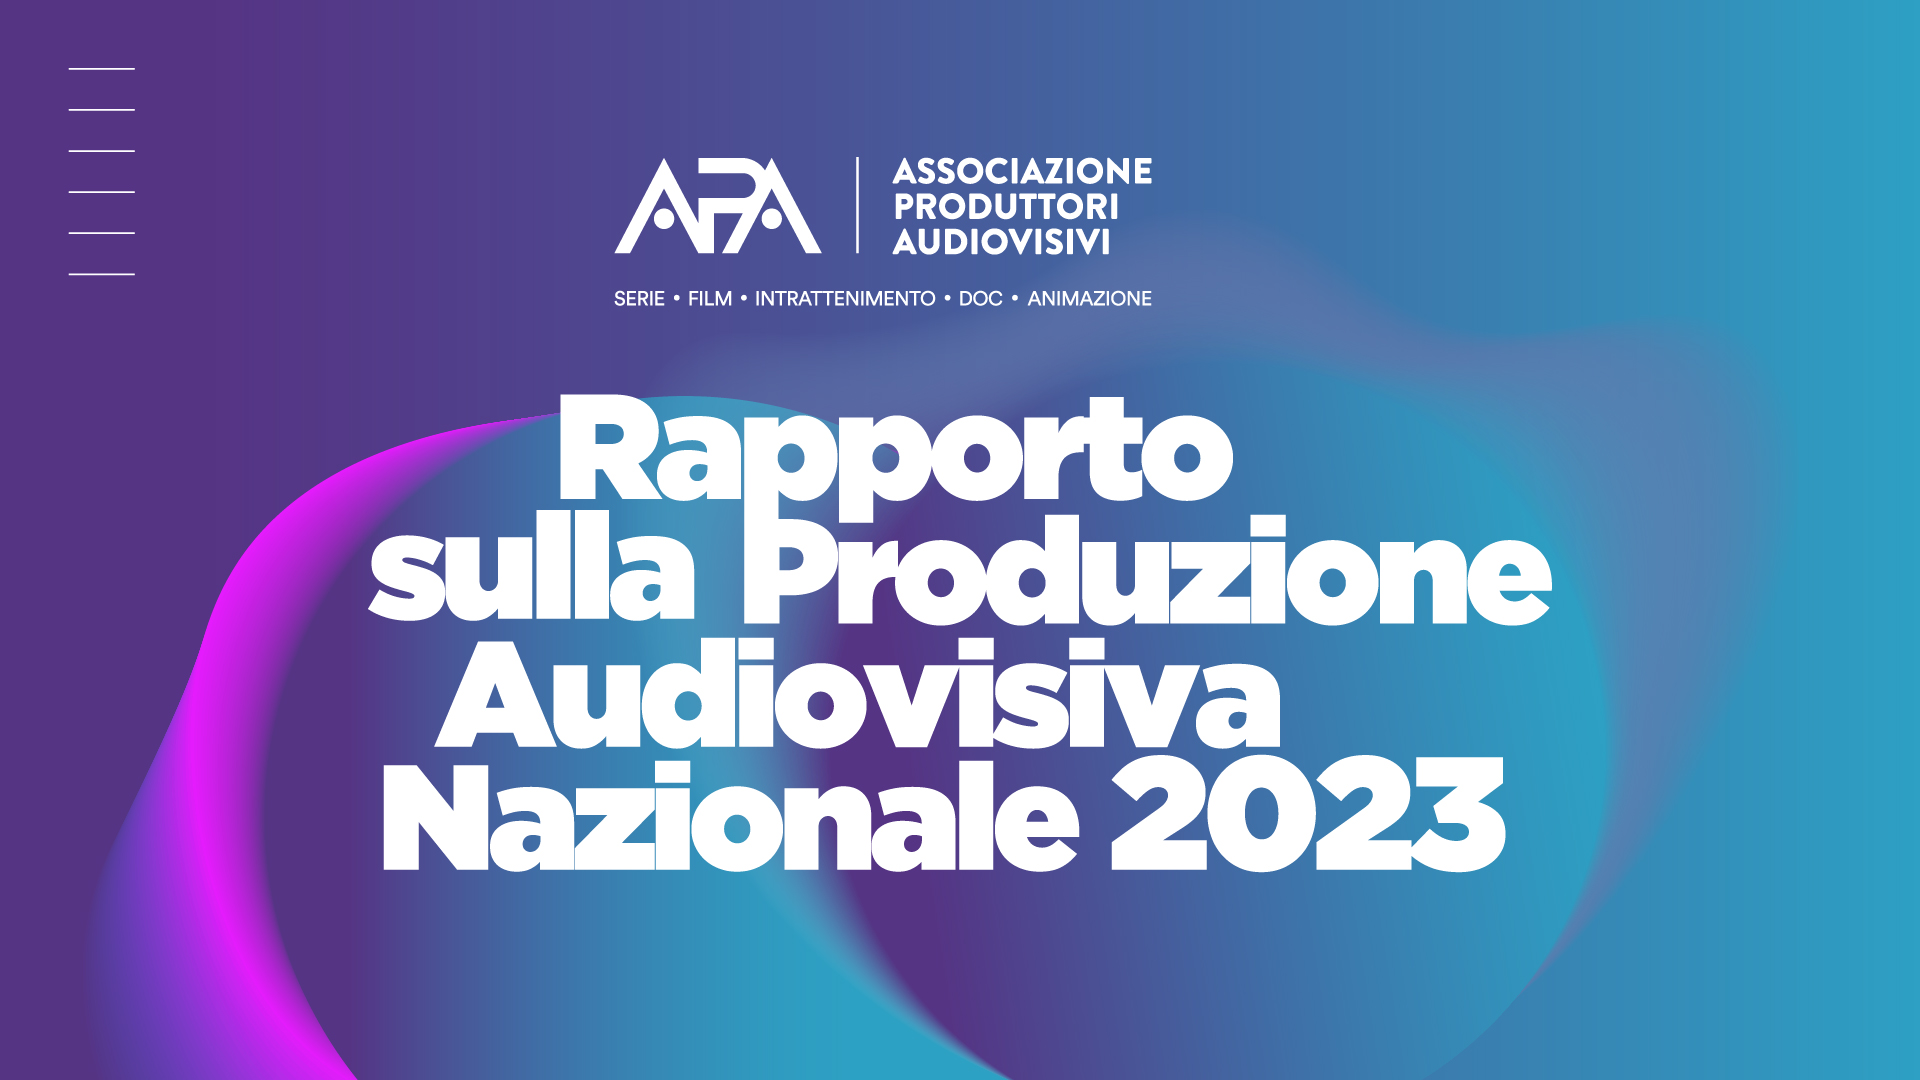 Rapporto sulla produzione audiovisiva nazionale 2023